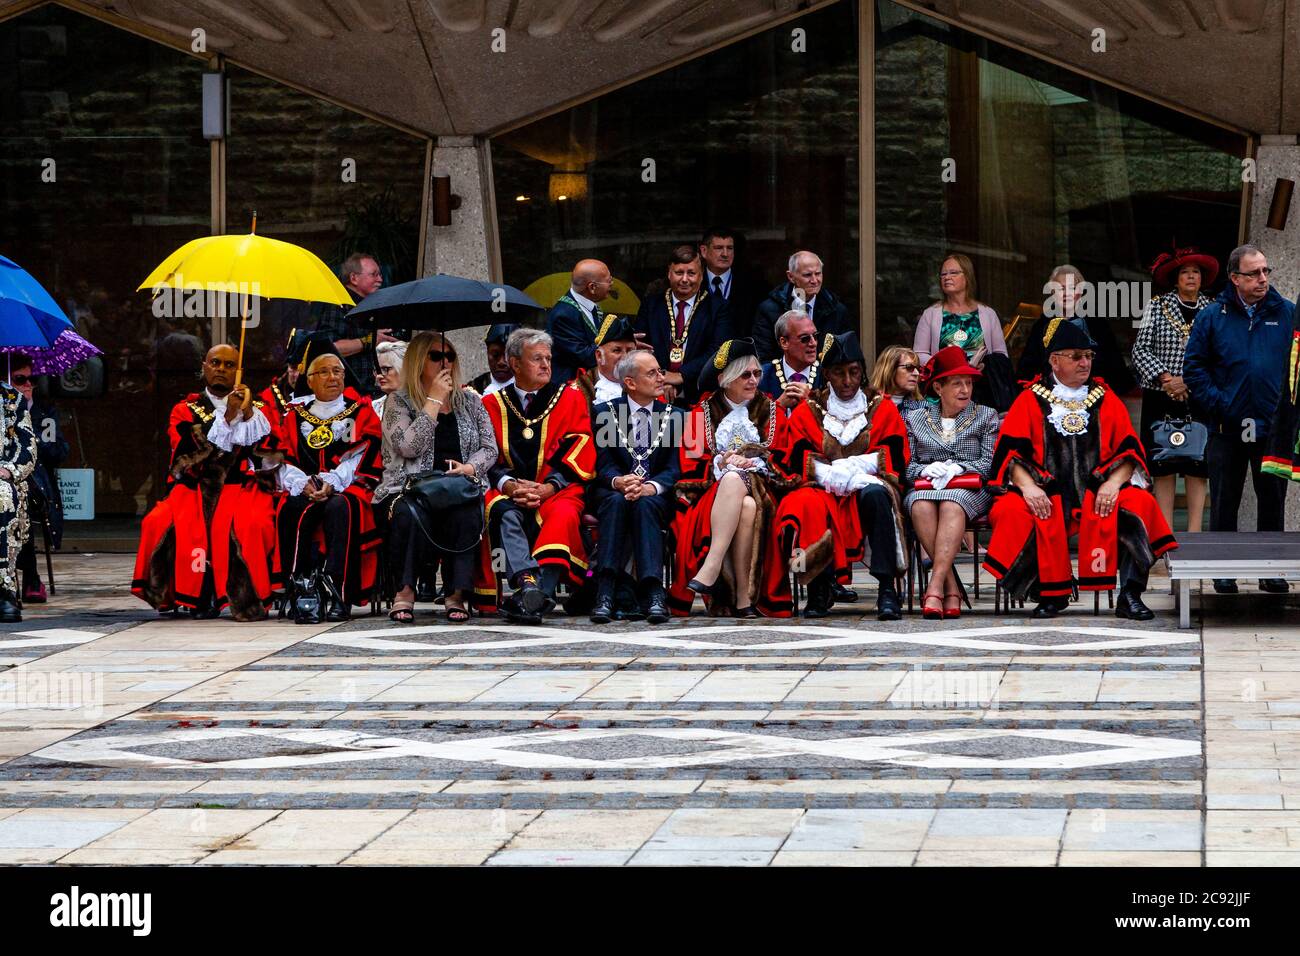 Un gruppo di sindaci londinesi in costume da cerimonia al Festival annuale della vendemmia dei primi Re e delle regine che si tiene al Guildhall Yard, Londra, Inghilterra. Foto Stock